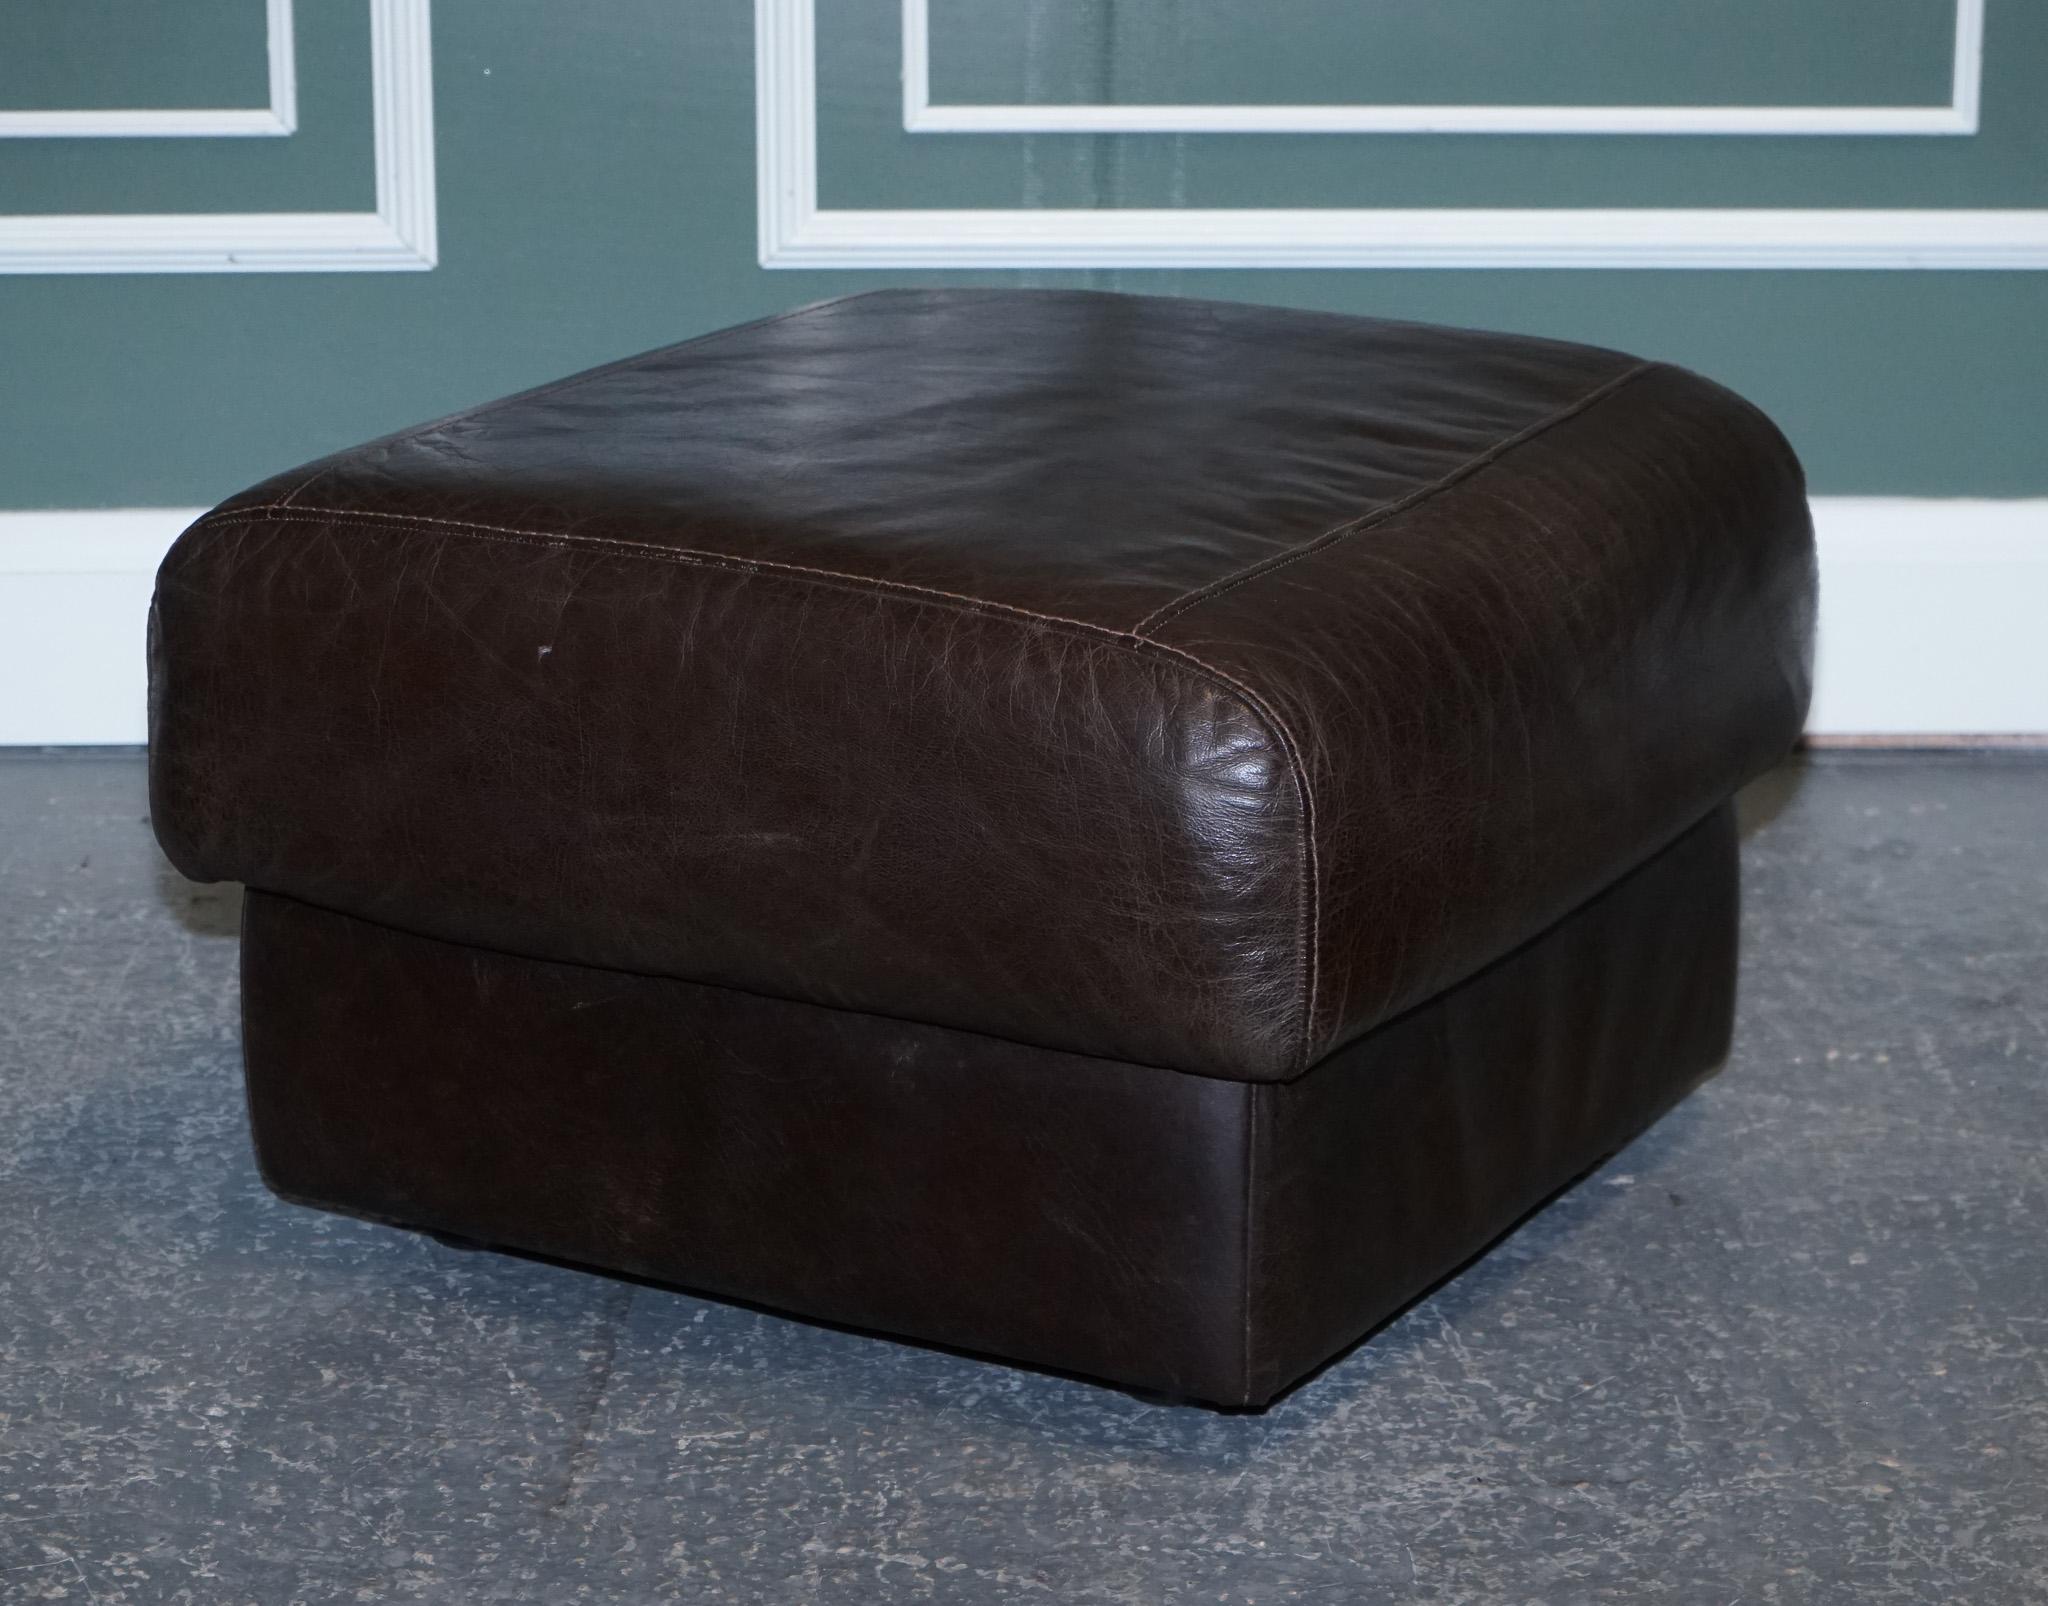 Nous sommes ravis de vous présenter ce pouf Vintage en cuir brun chocolat.

Nous avons une paire de fauteuils assortis, deux et trois places, disponibles sur nos autres listes.
Si vous êtes intéressé, n'hésitez pas à nous envoyer un message.

Nous